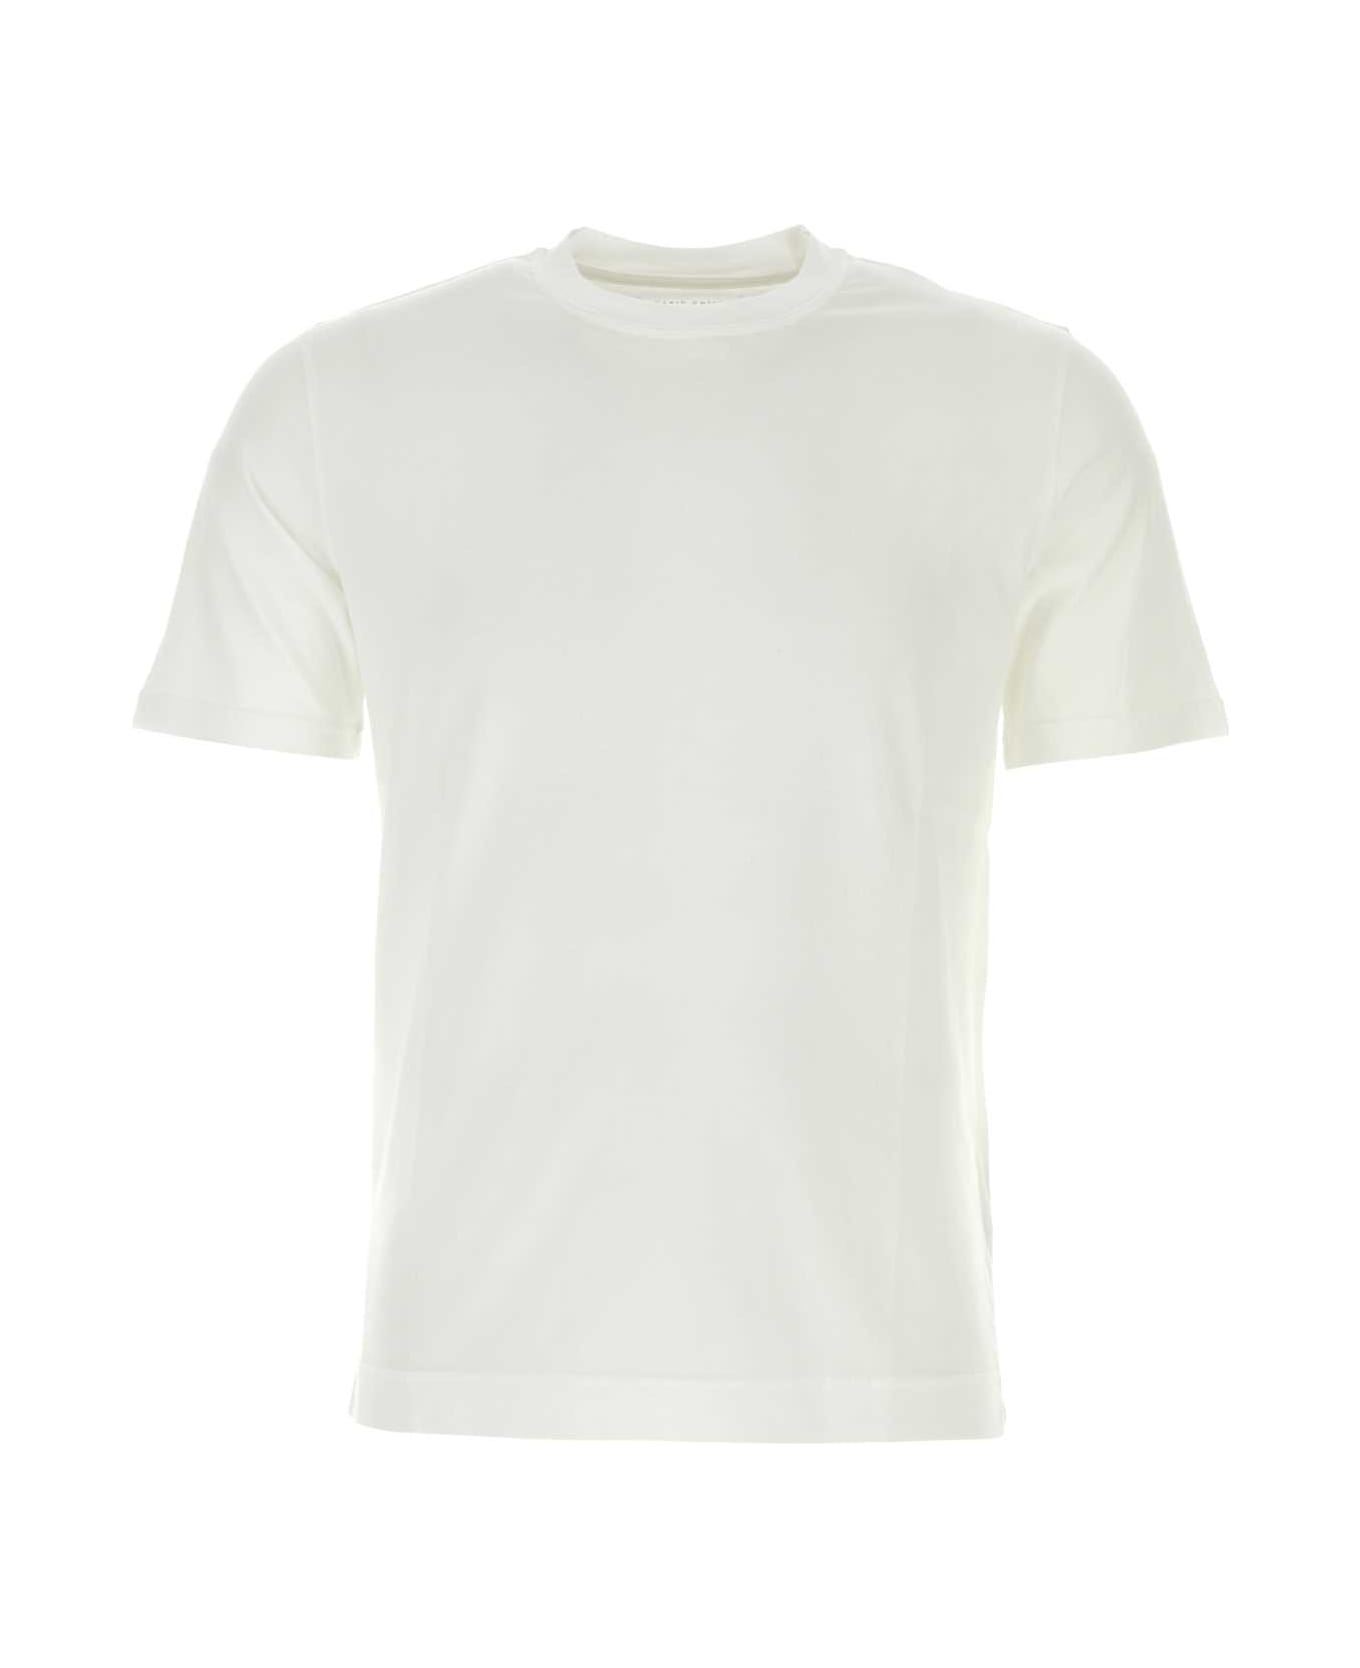 Fedeli White Cotton T-shirt - White